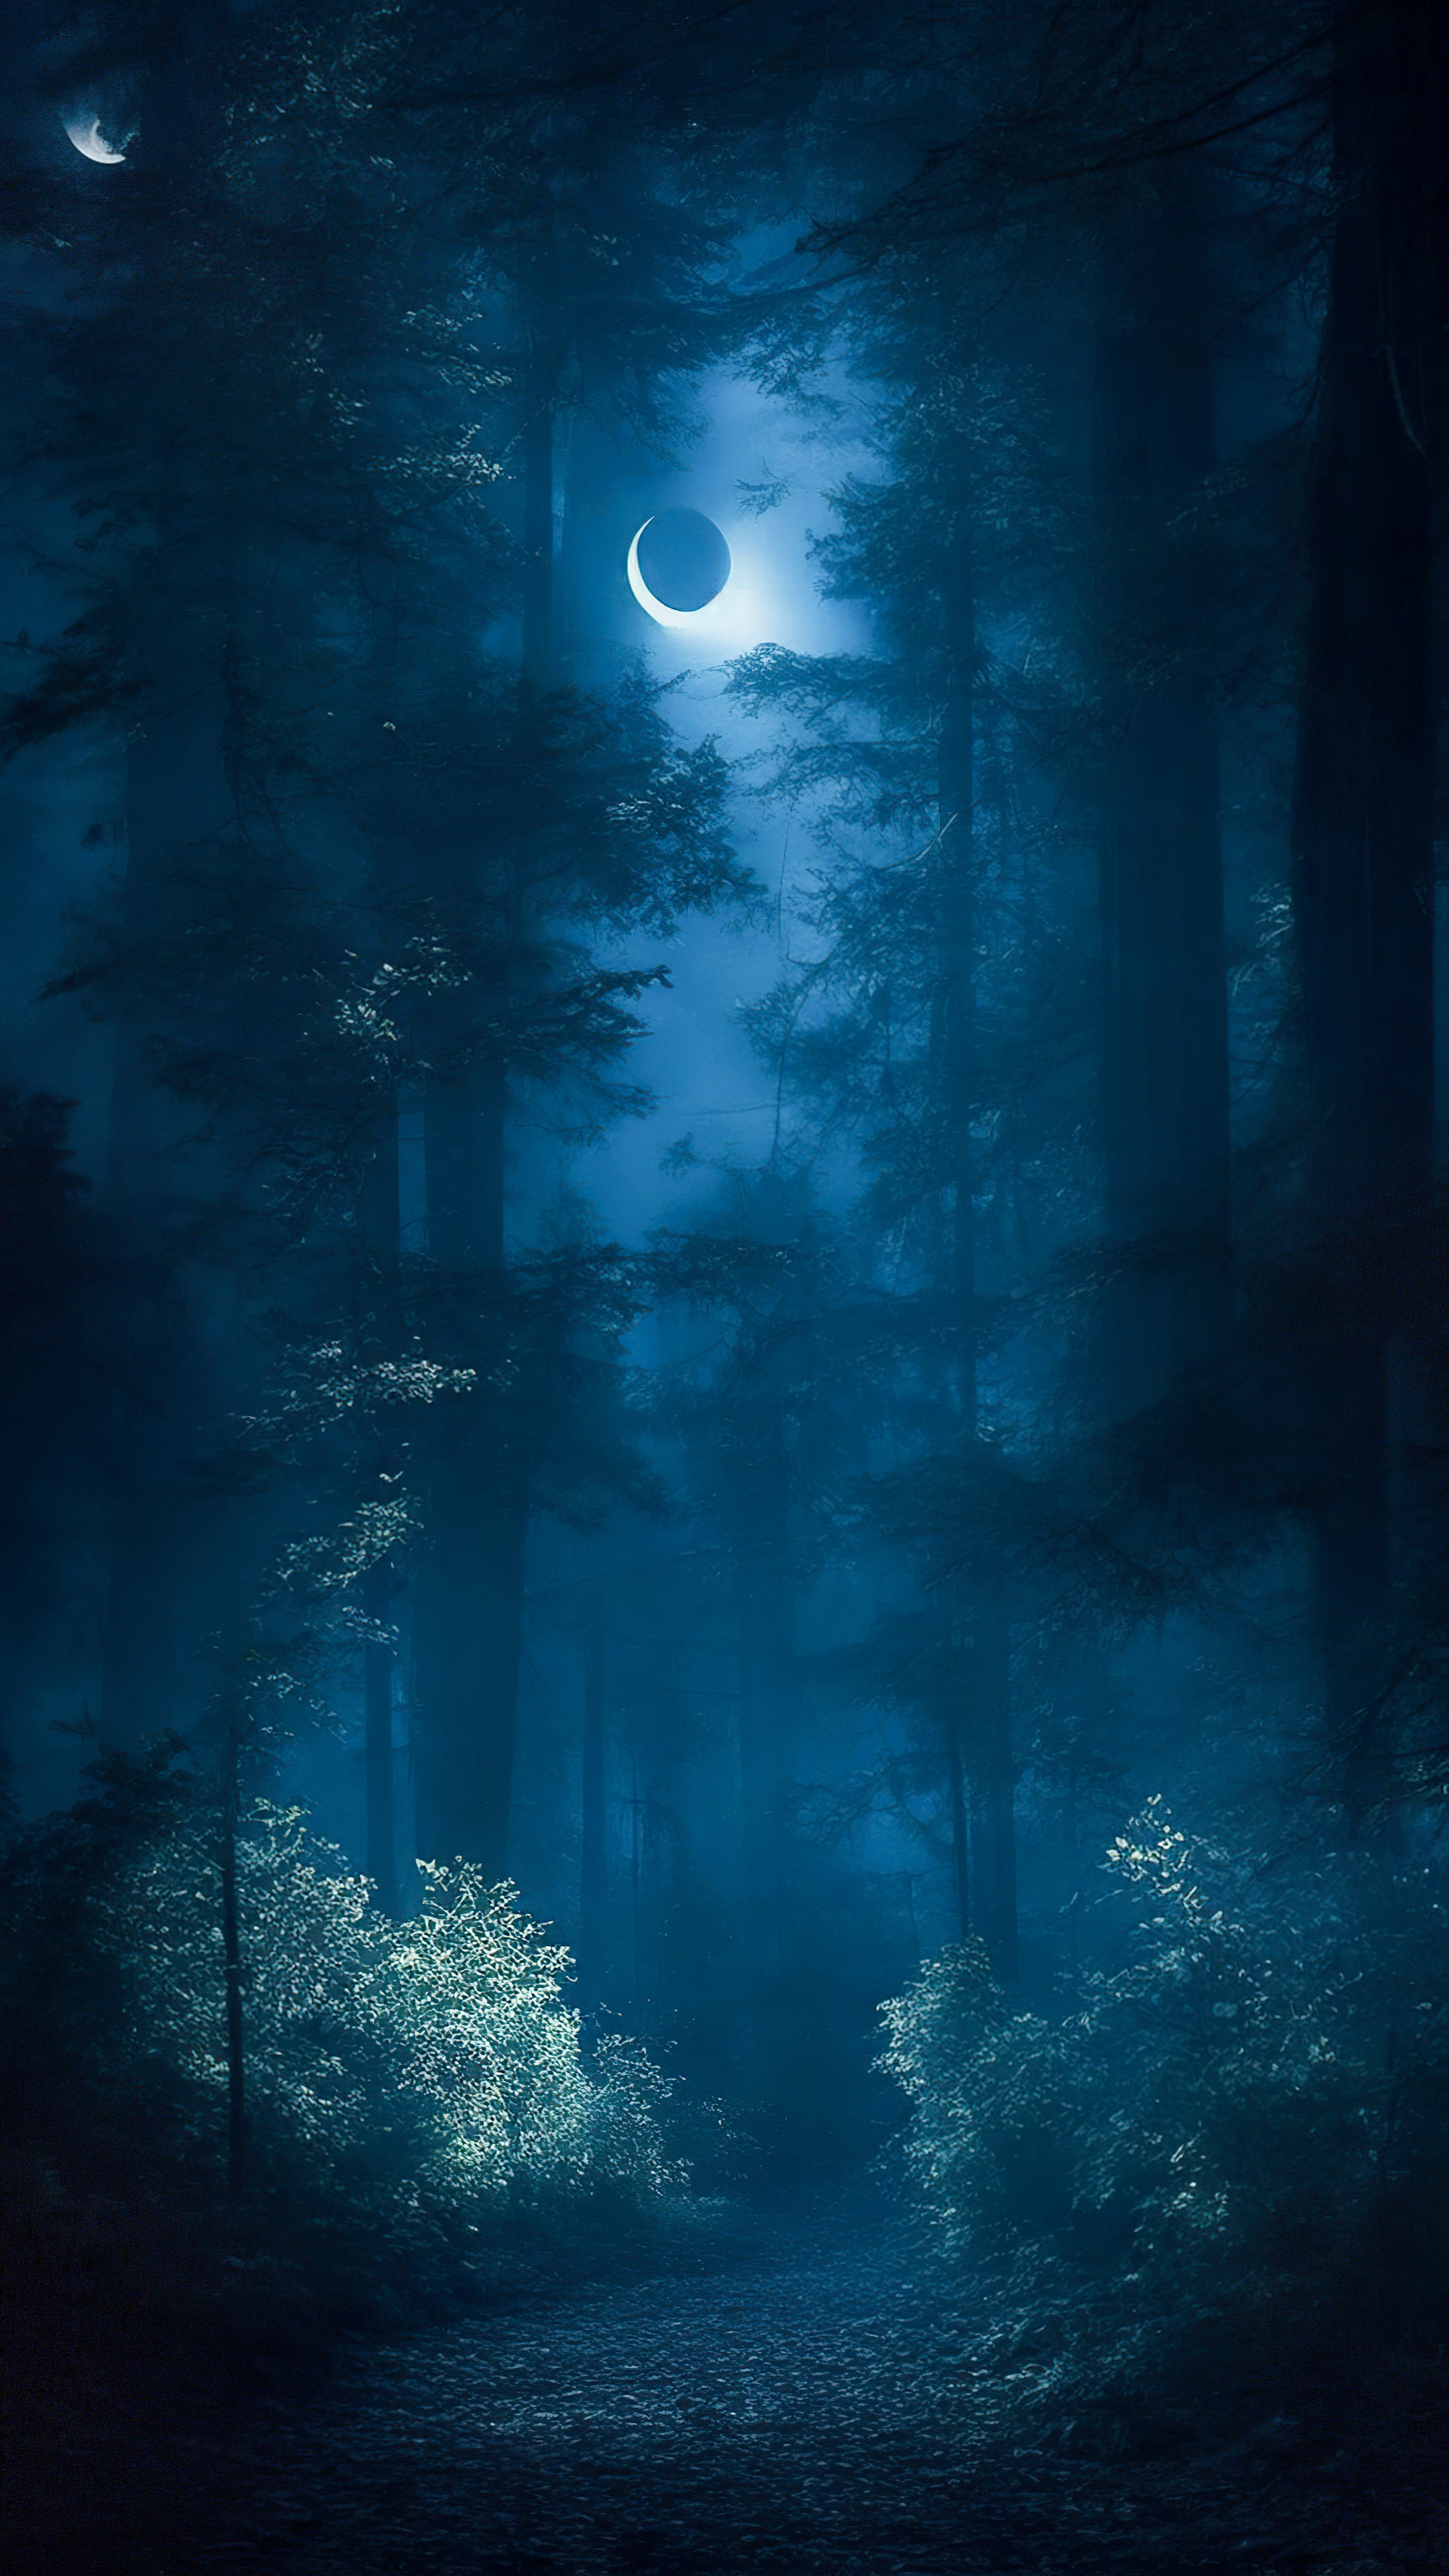 Admirez l'élégance de nos magnifiques images de fond d'écran nature, mettant en scène une forêt mystérieuse la nuit, où la lumière de la lune filtre à travers les arbres, créant une atmosphère envoûtante et étrange.